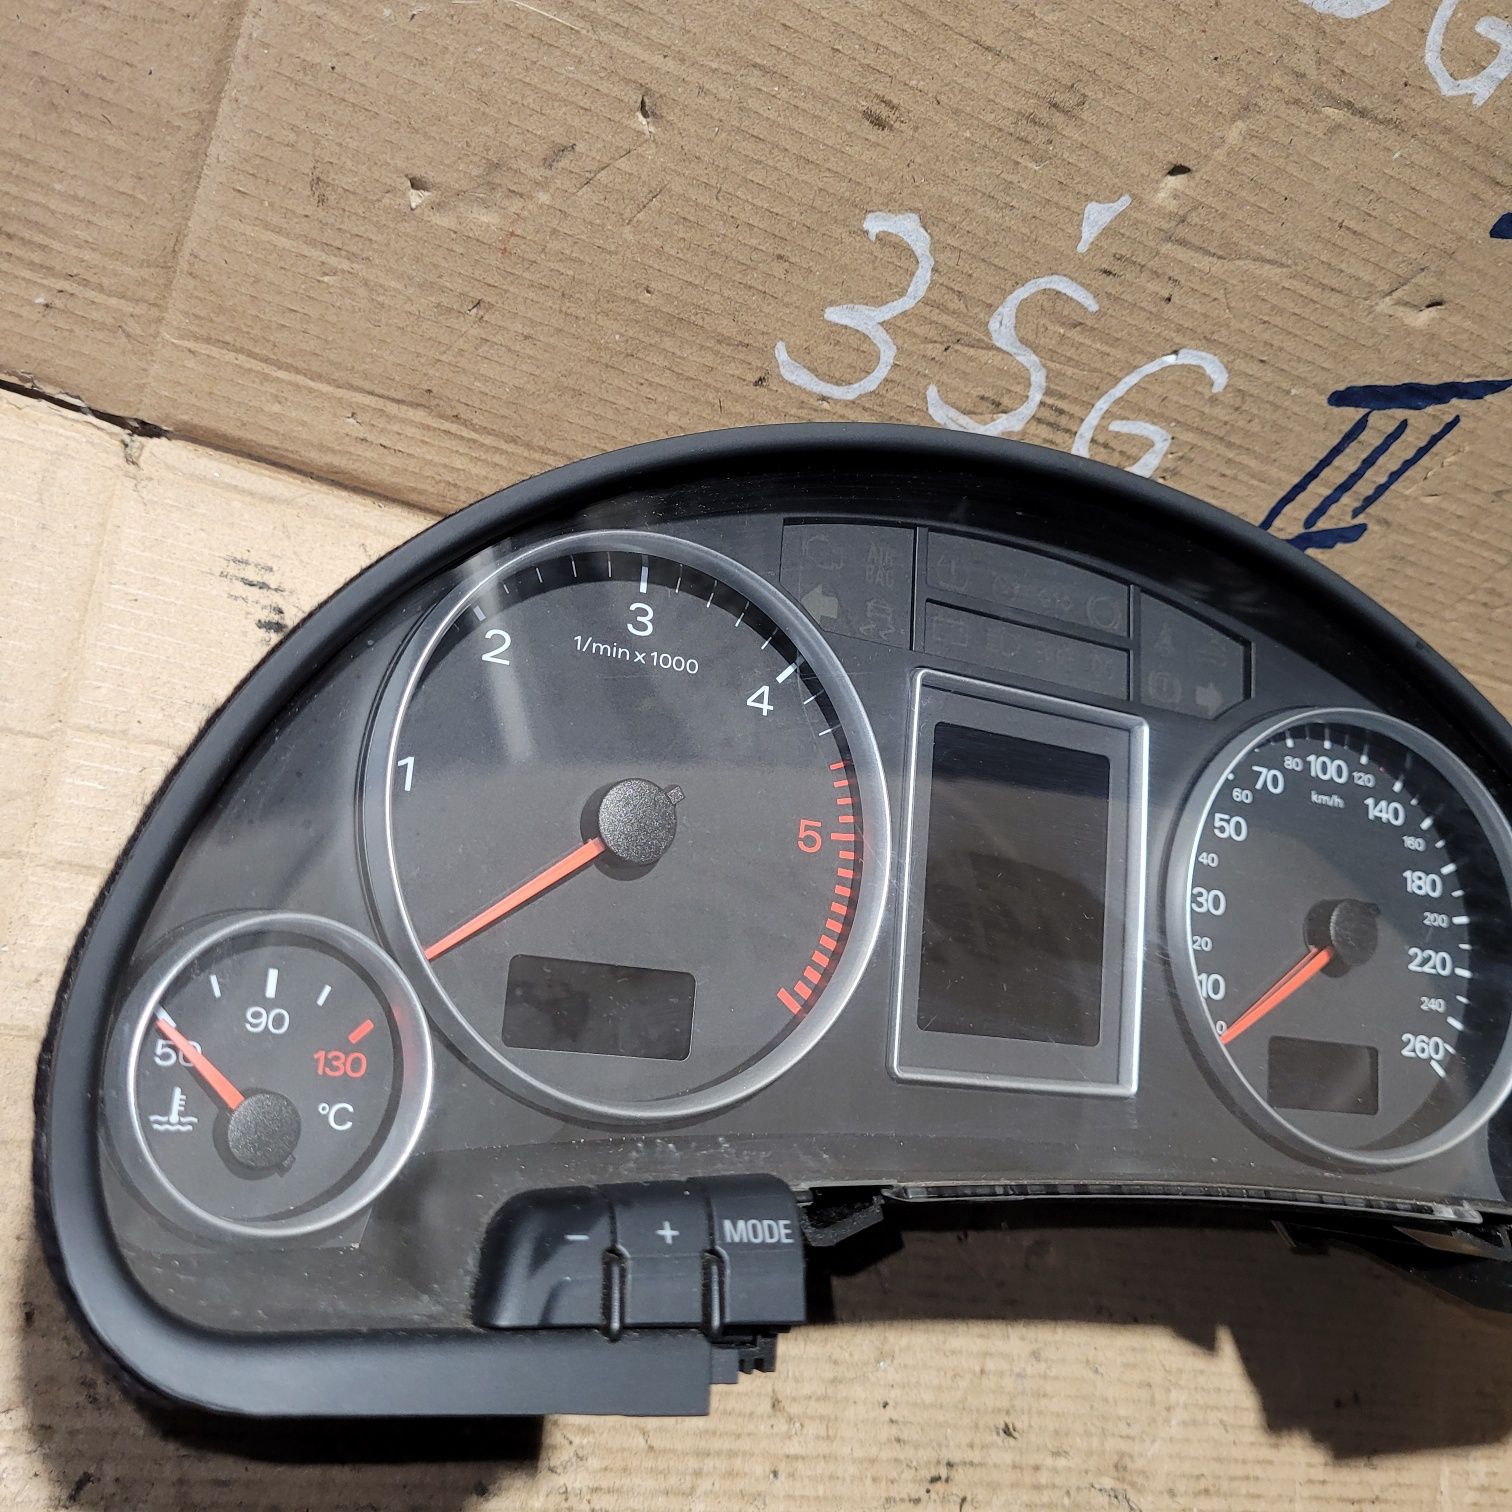 Licznik zegary audi a4 b7 diesel 2007r kolorowy wyswietlacz